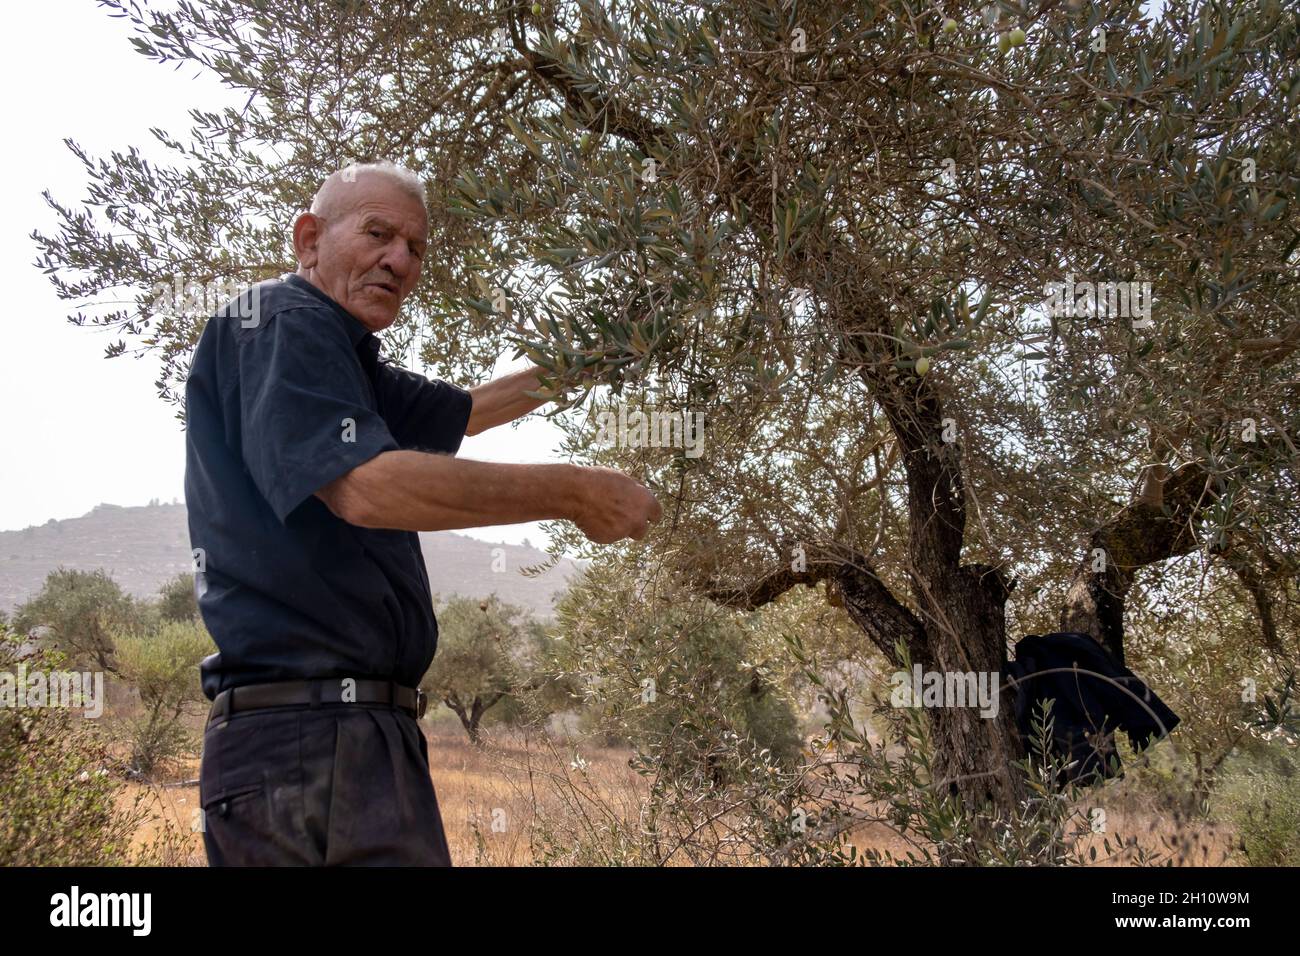 Un uomo palestinese raccoglie olive in un uliveto vicino all'insediamento ebraico di Eli il 14 ottobre 2021 in Cisgiordania, Israele. La raccolta delle olive è un antico rito palestinese, che segna il cambiamento delle stagioni intorno a ottobre e novembre. L'industria dell'olio d'oliva è importante per le comunità palestinesi, con i suoi profitti che sostengono i mezzi di sussistenza di circa 80,000 famiglie. Foto Stock